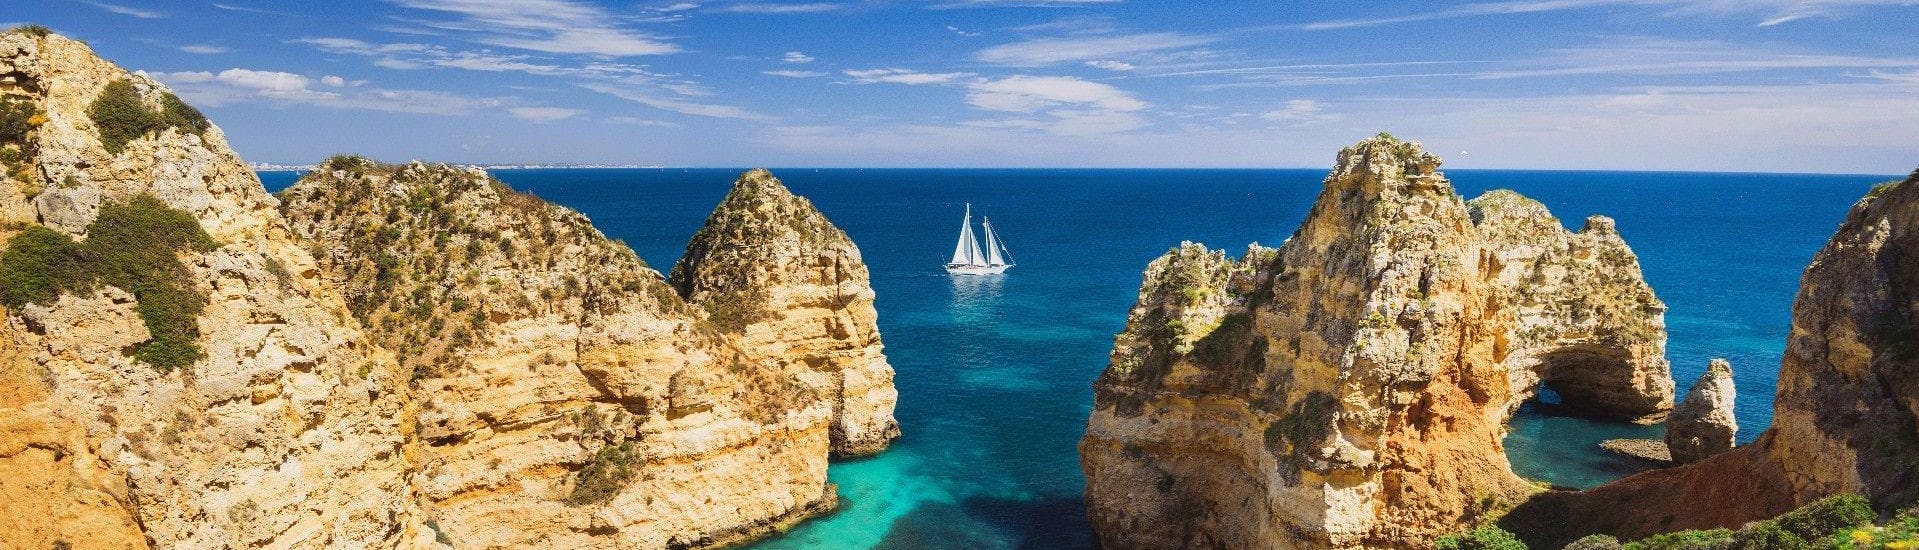 Una imagen de las impresionantes formaciones rocosas de la costa del Algarve que se pueden ver en un paseo en barco desde Vilamoura.